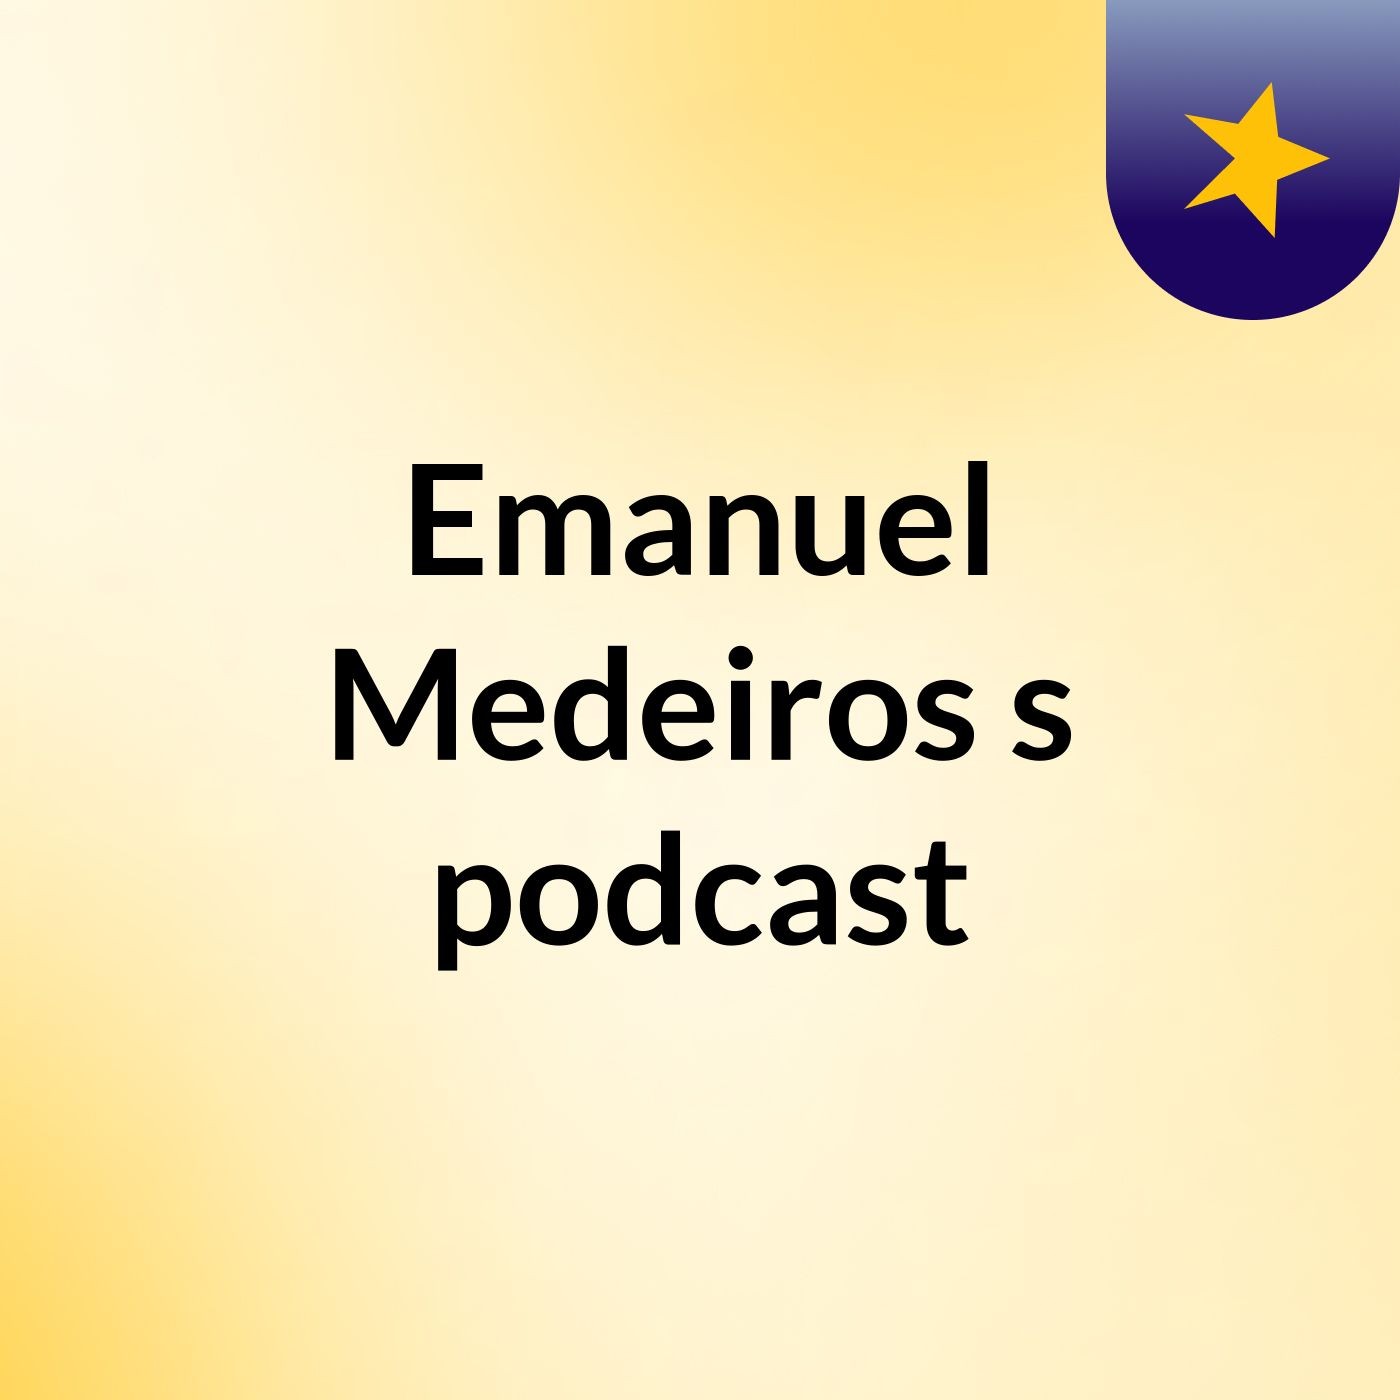 Emanuel Medeiros's podcast